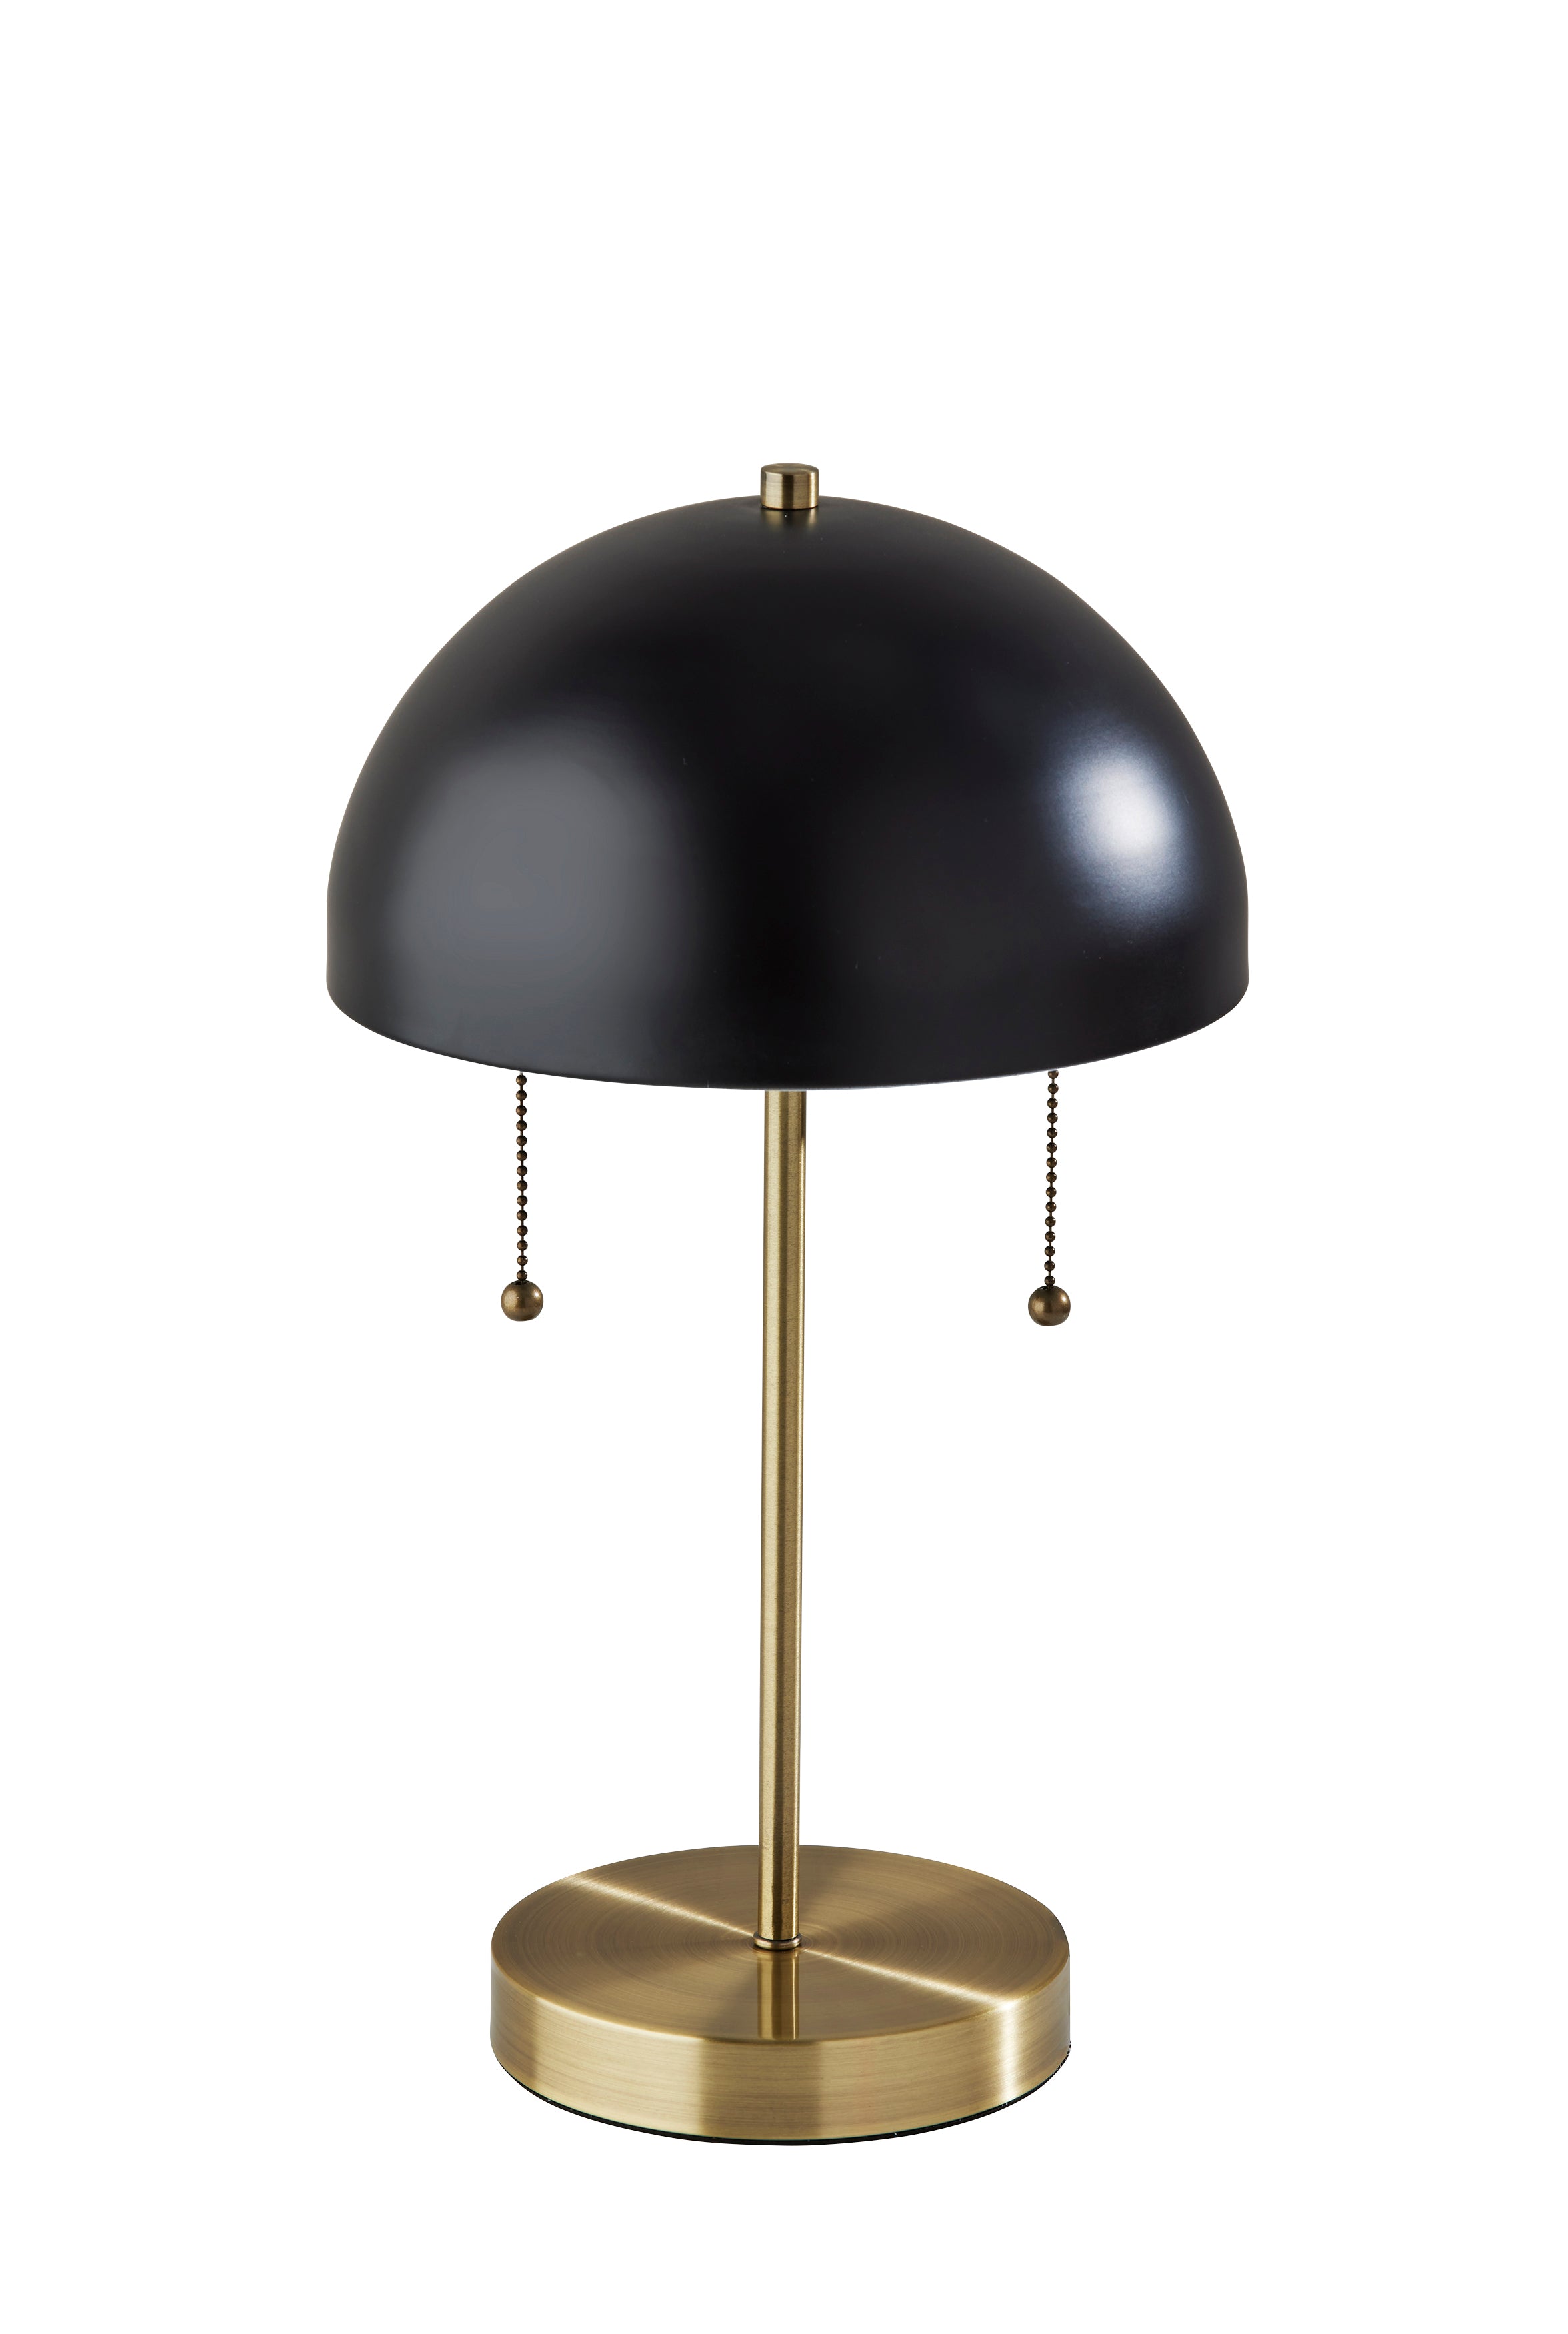 BOWIE Lampe sur table Or, Noir - 5132-01 | ADESSO